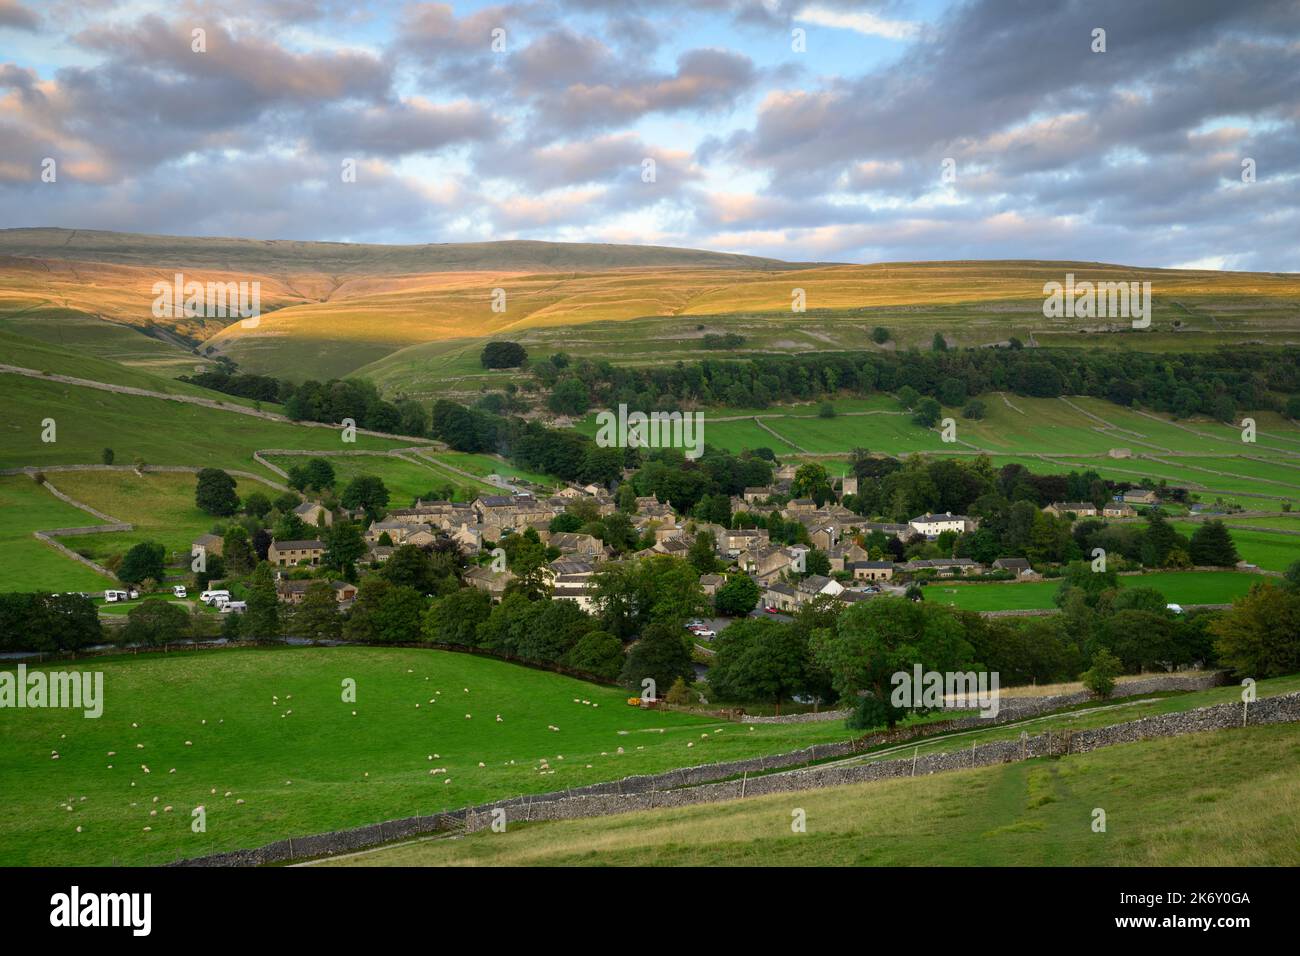 Village pittoresque de Dales (chalets et maisons) niché dans la vallée (pentes abruptes à flanc de colline et terres émergées ensoleillées) - Kettlewell, Yorkshire Angleterre Royaume-Uni. Banque D'Images